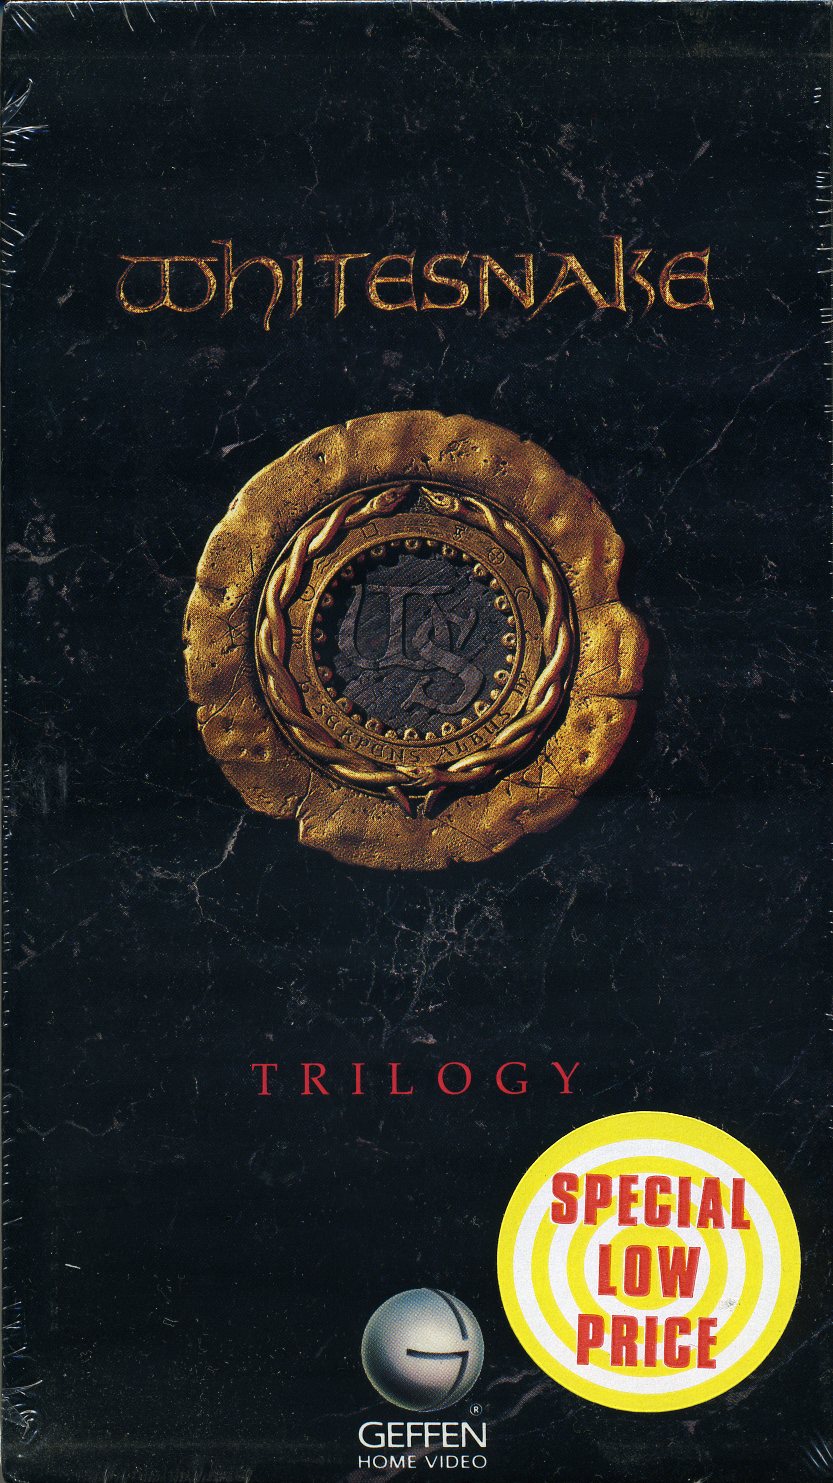 WHITESNAKE - Trilogy cover 